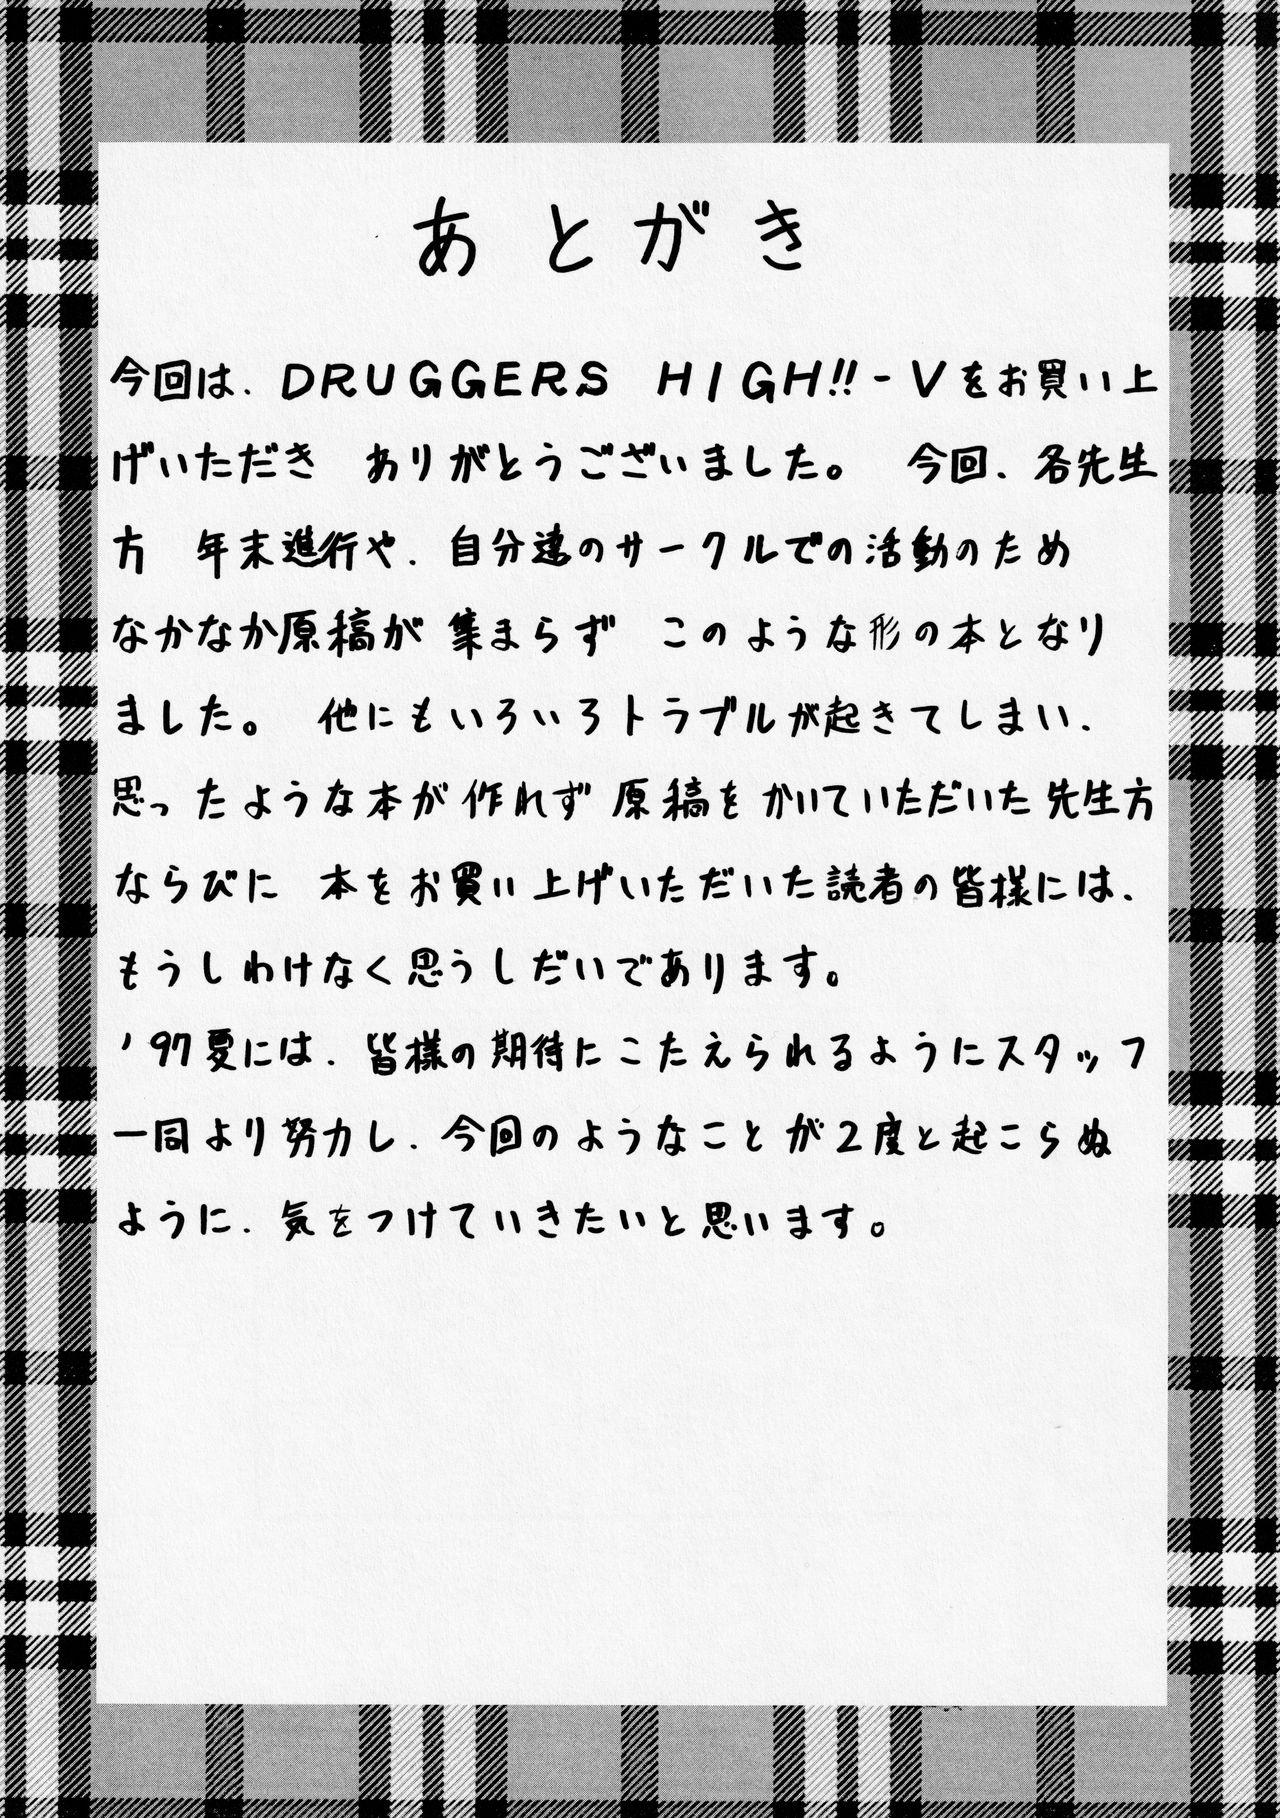 Druggers High!! V 47